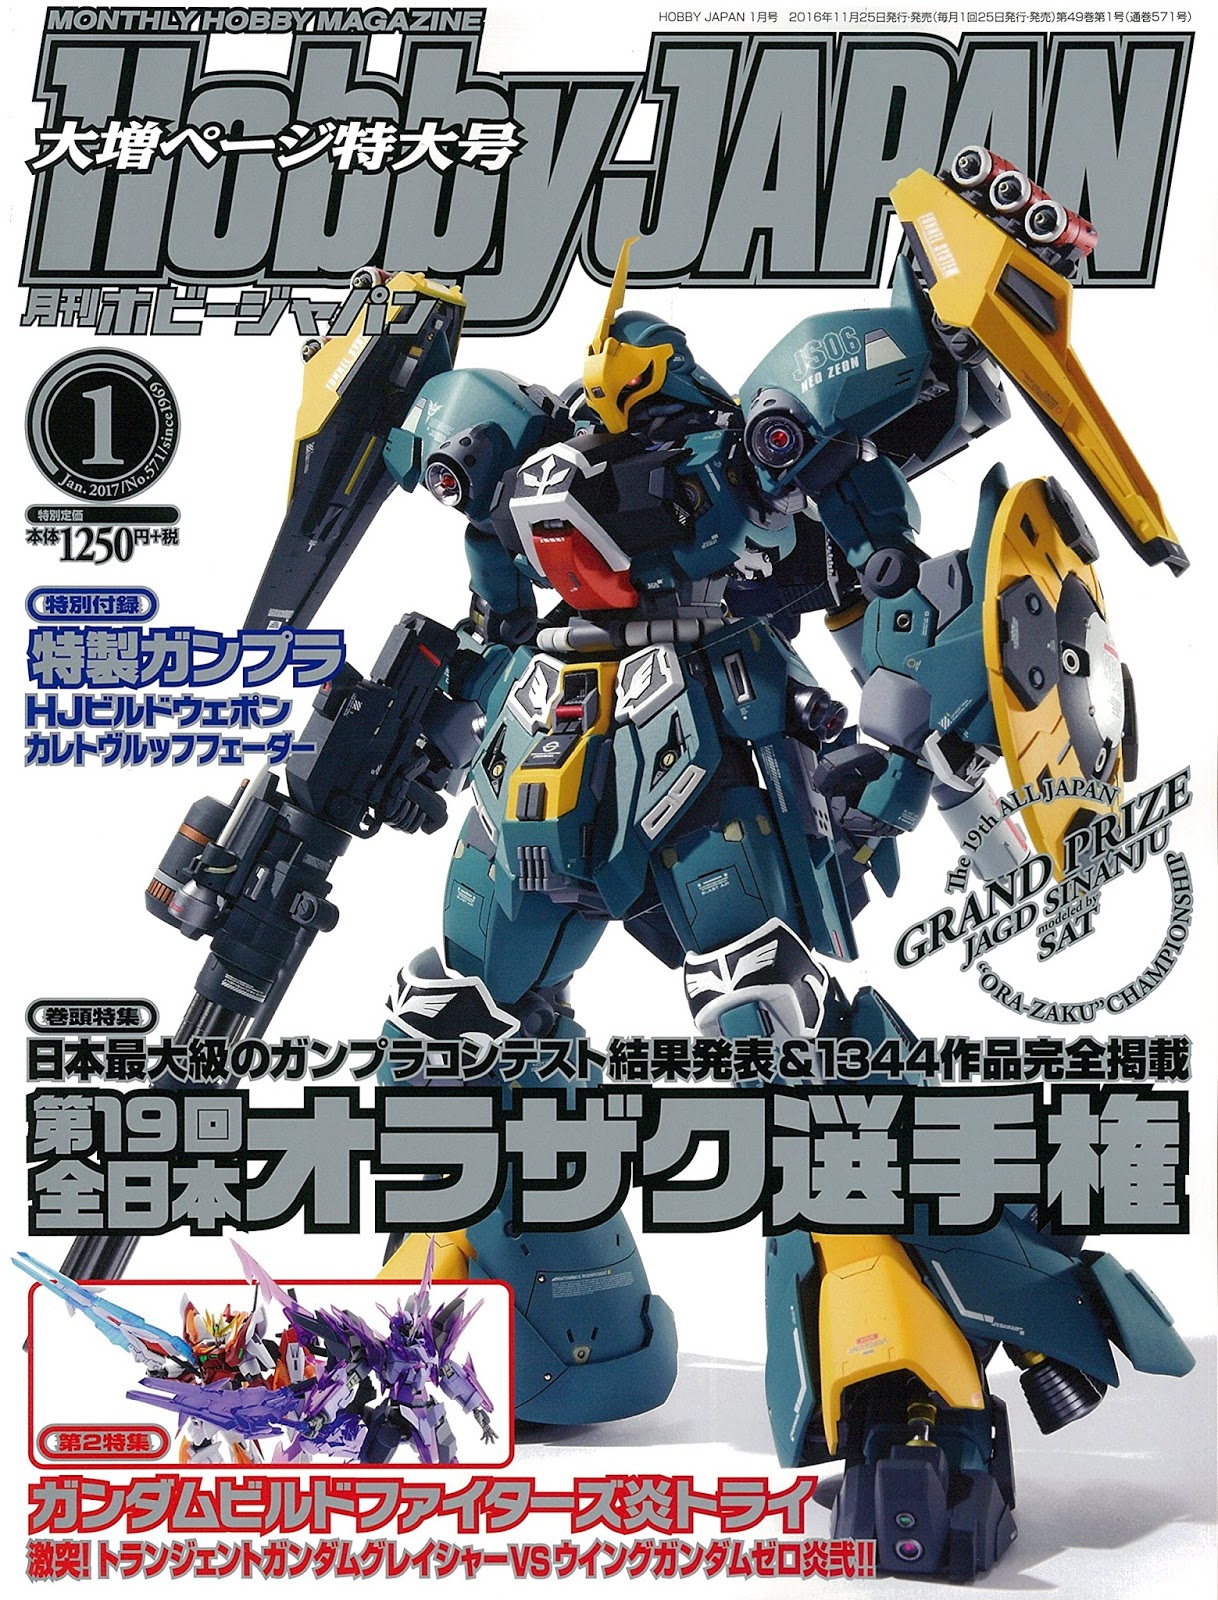 Bandai HG 1/144 HJ Build Weapon Caletvwlch Feder Hobby Japan Magazine 